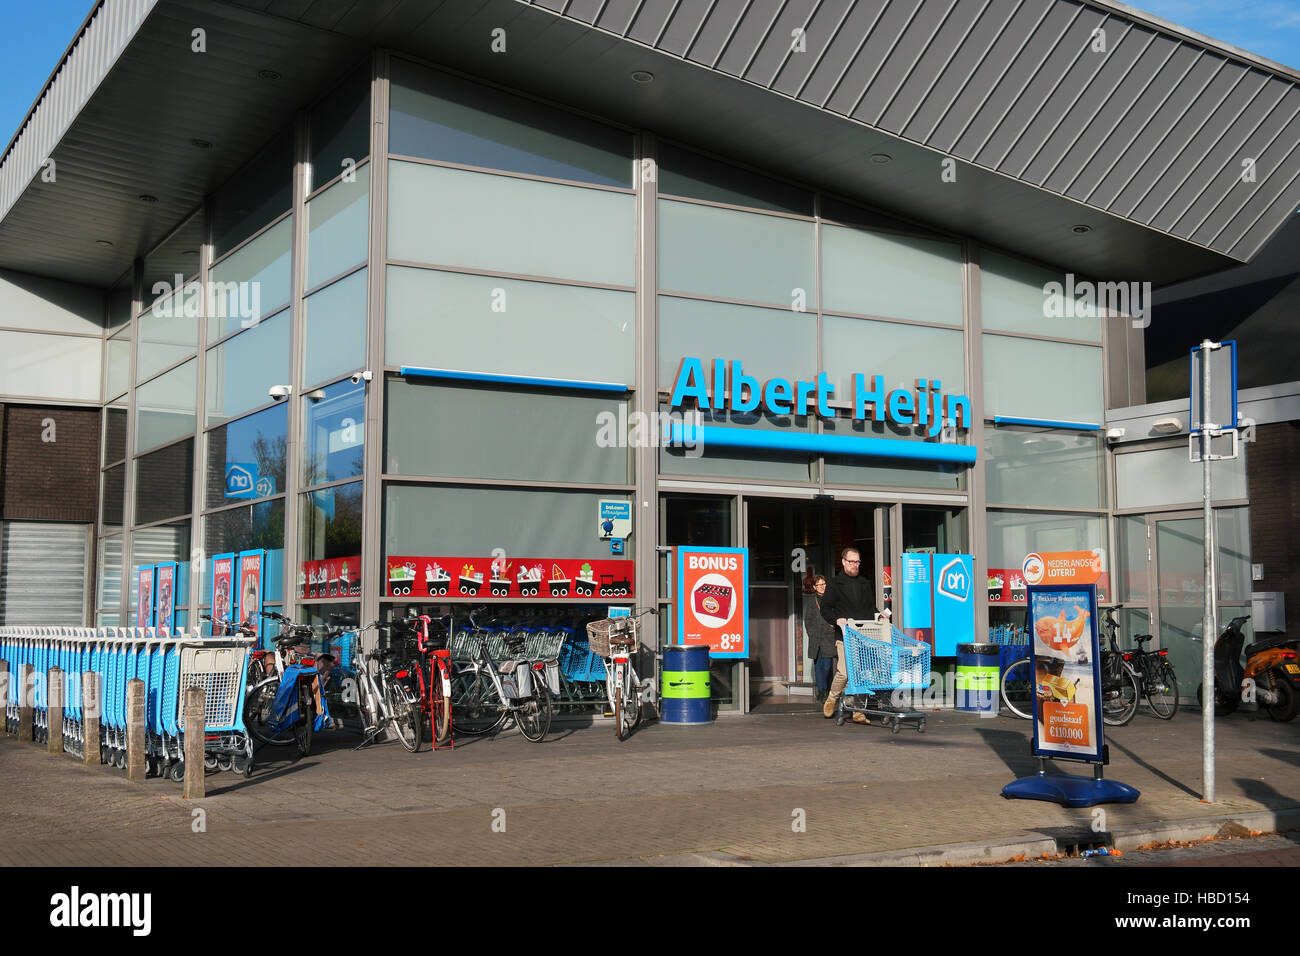 Albert Heijn Supermarket in The Netherlands Stock Photo